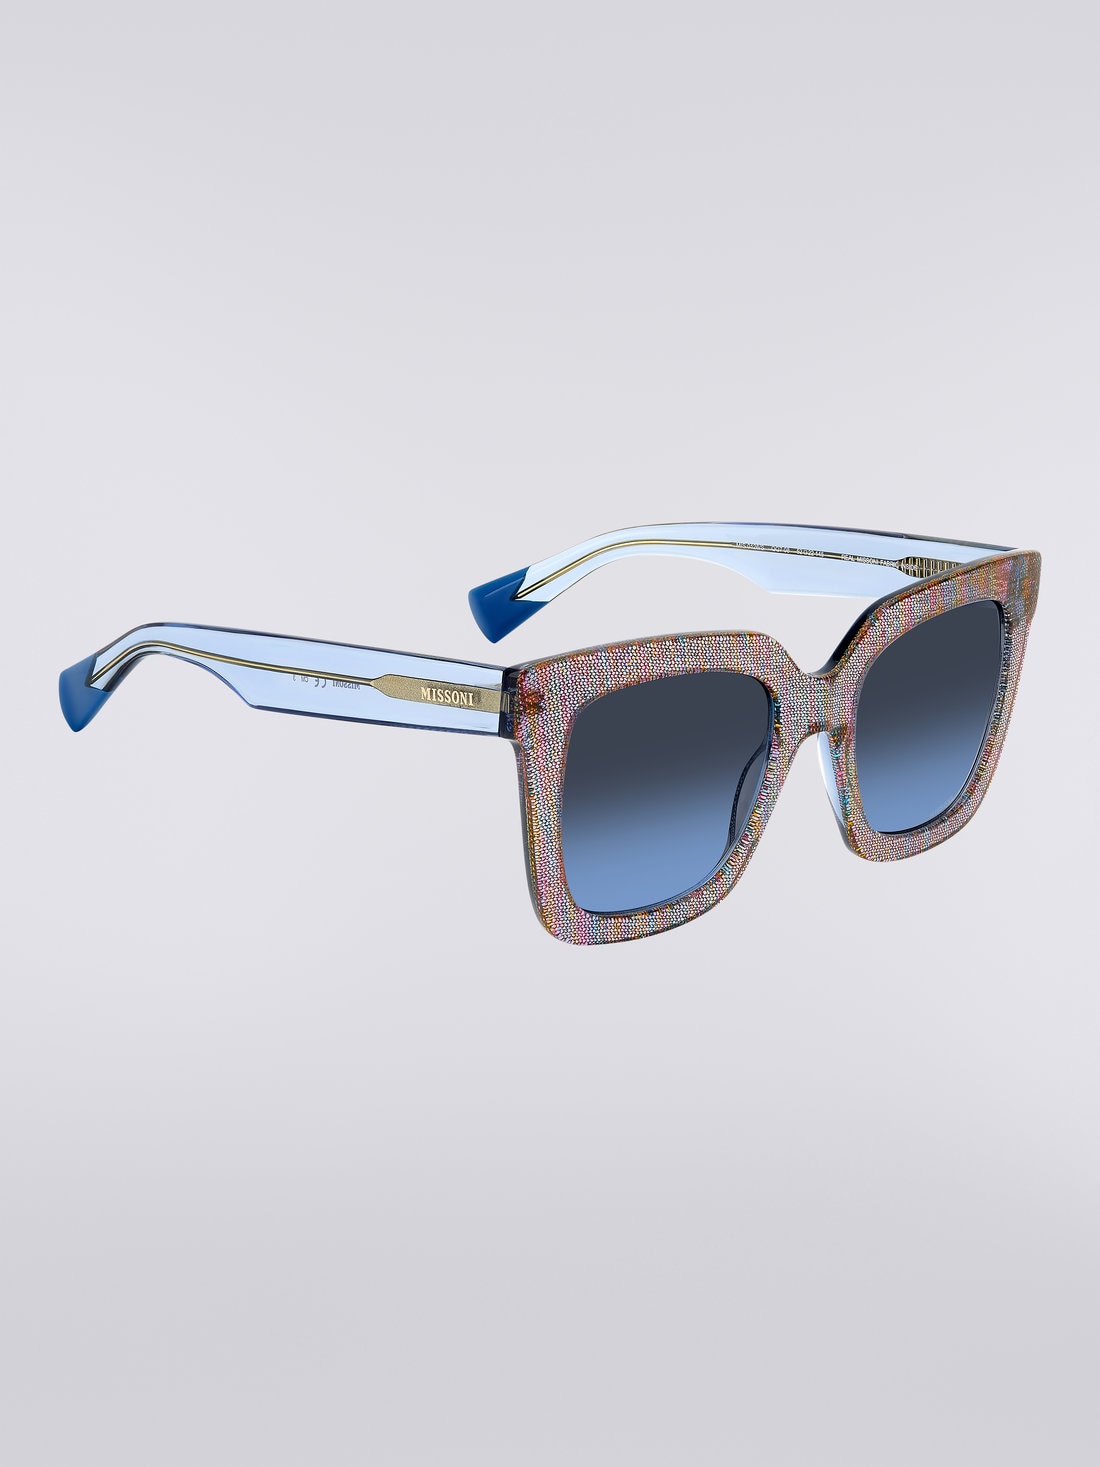 Missoni Dna Acetate Sunglasses, Multicoloured  - 8051575840258 - 2